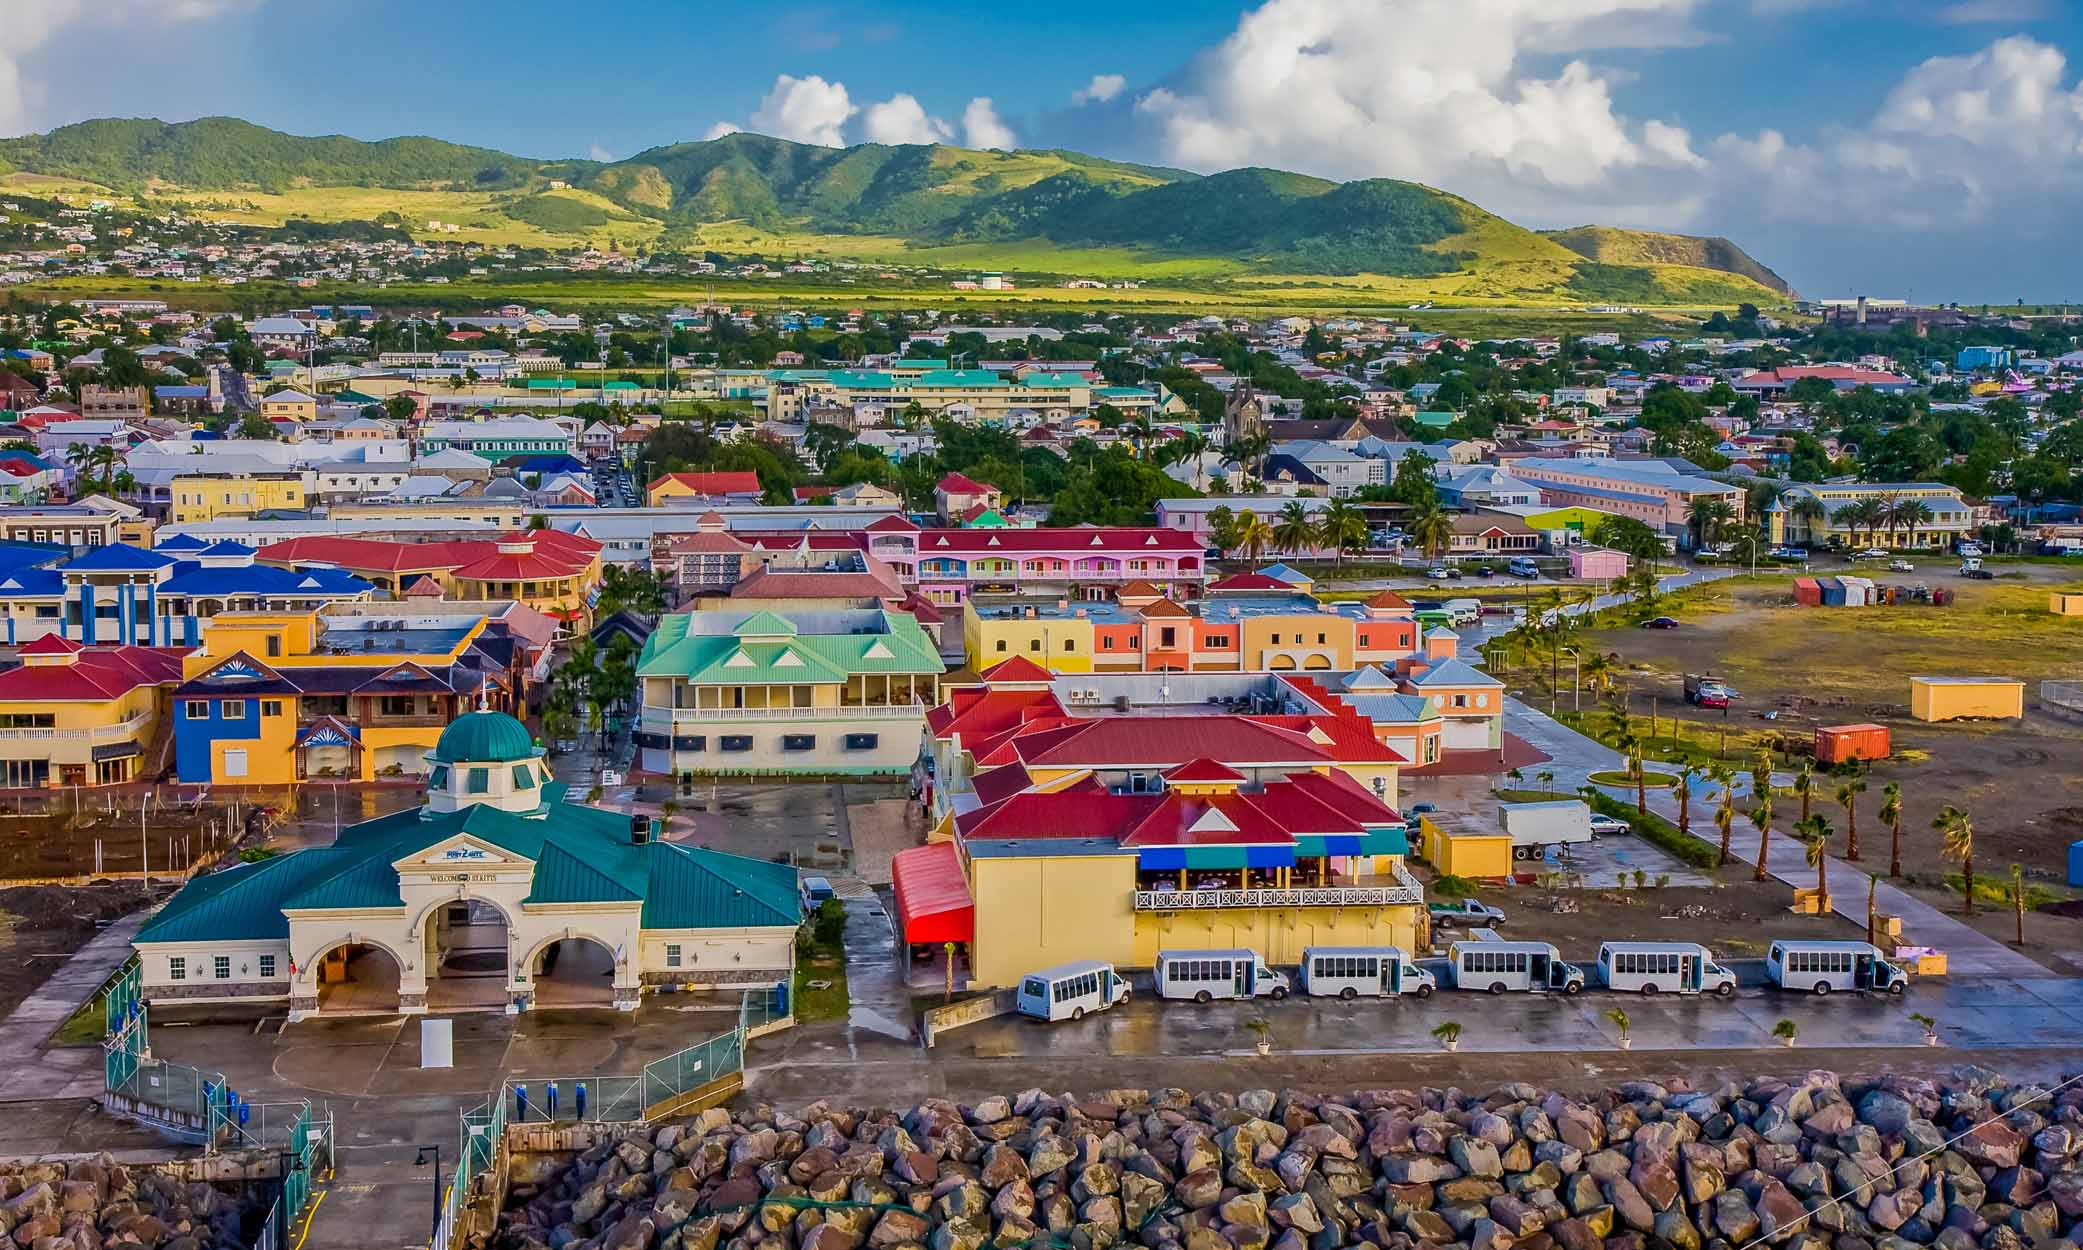 Какова стоимость гражданства Сент-Китс и Невис по инвестициям?